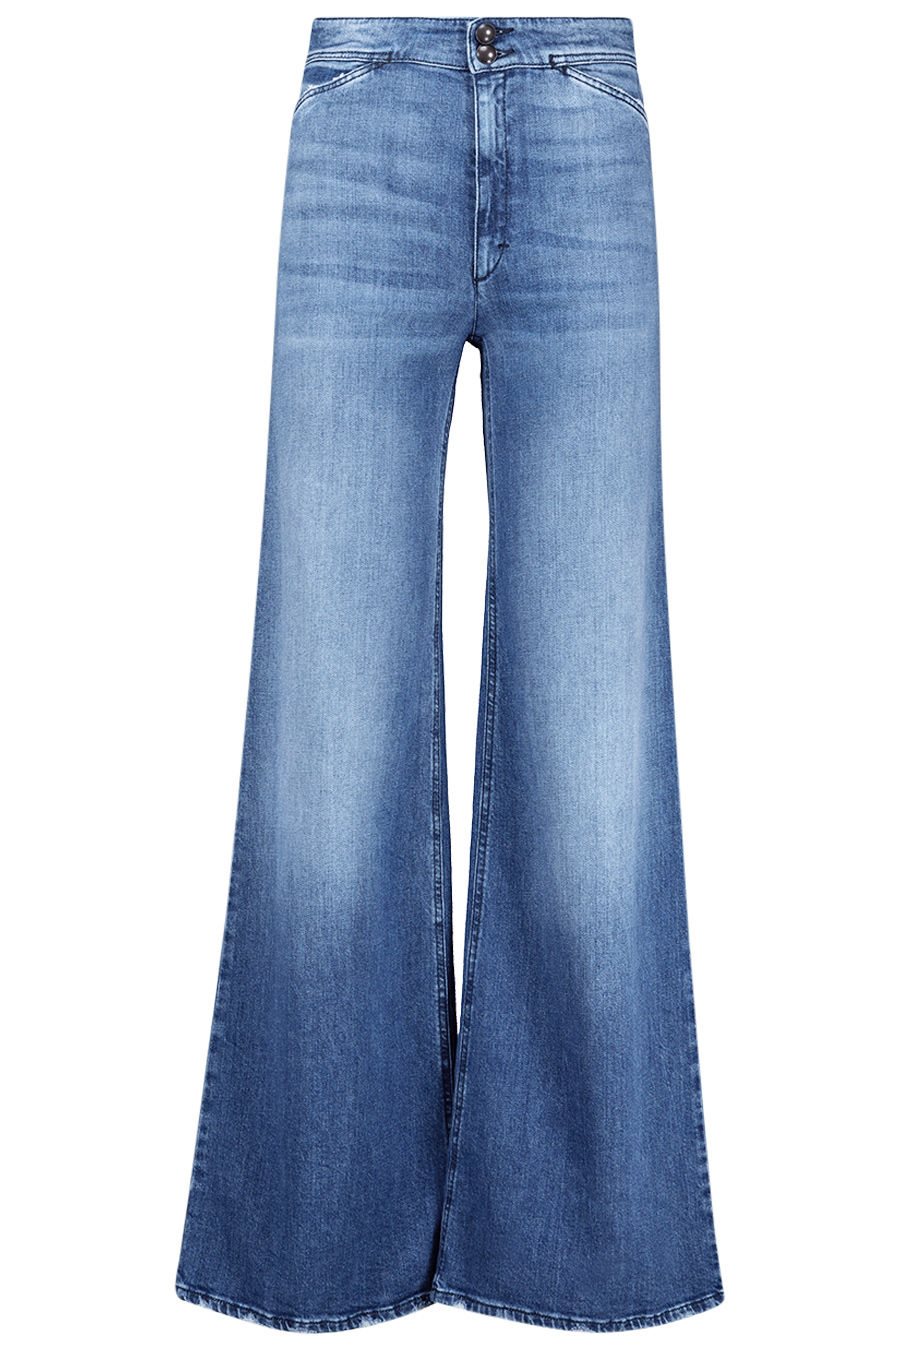 firusas.com_Dorothee Schumacher_leg jeans_swank wide_EUR 349